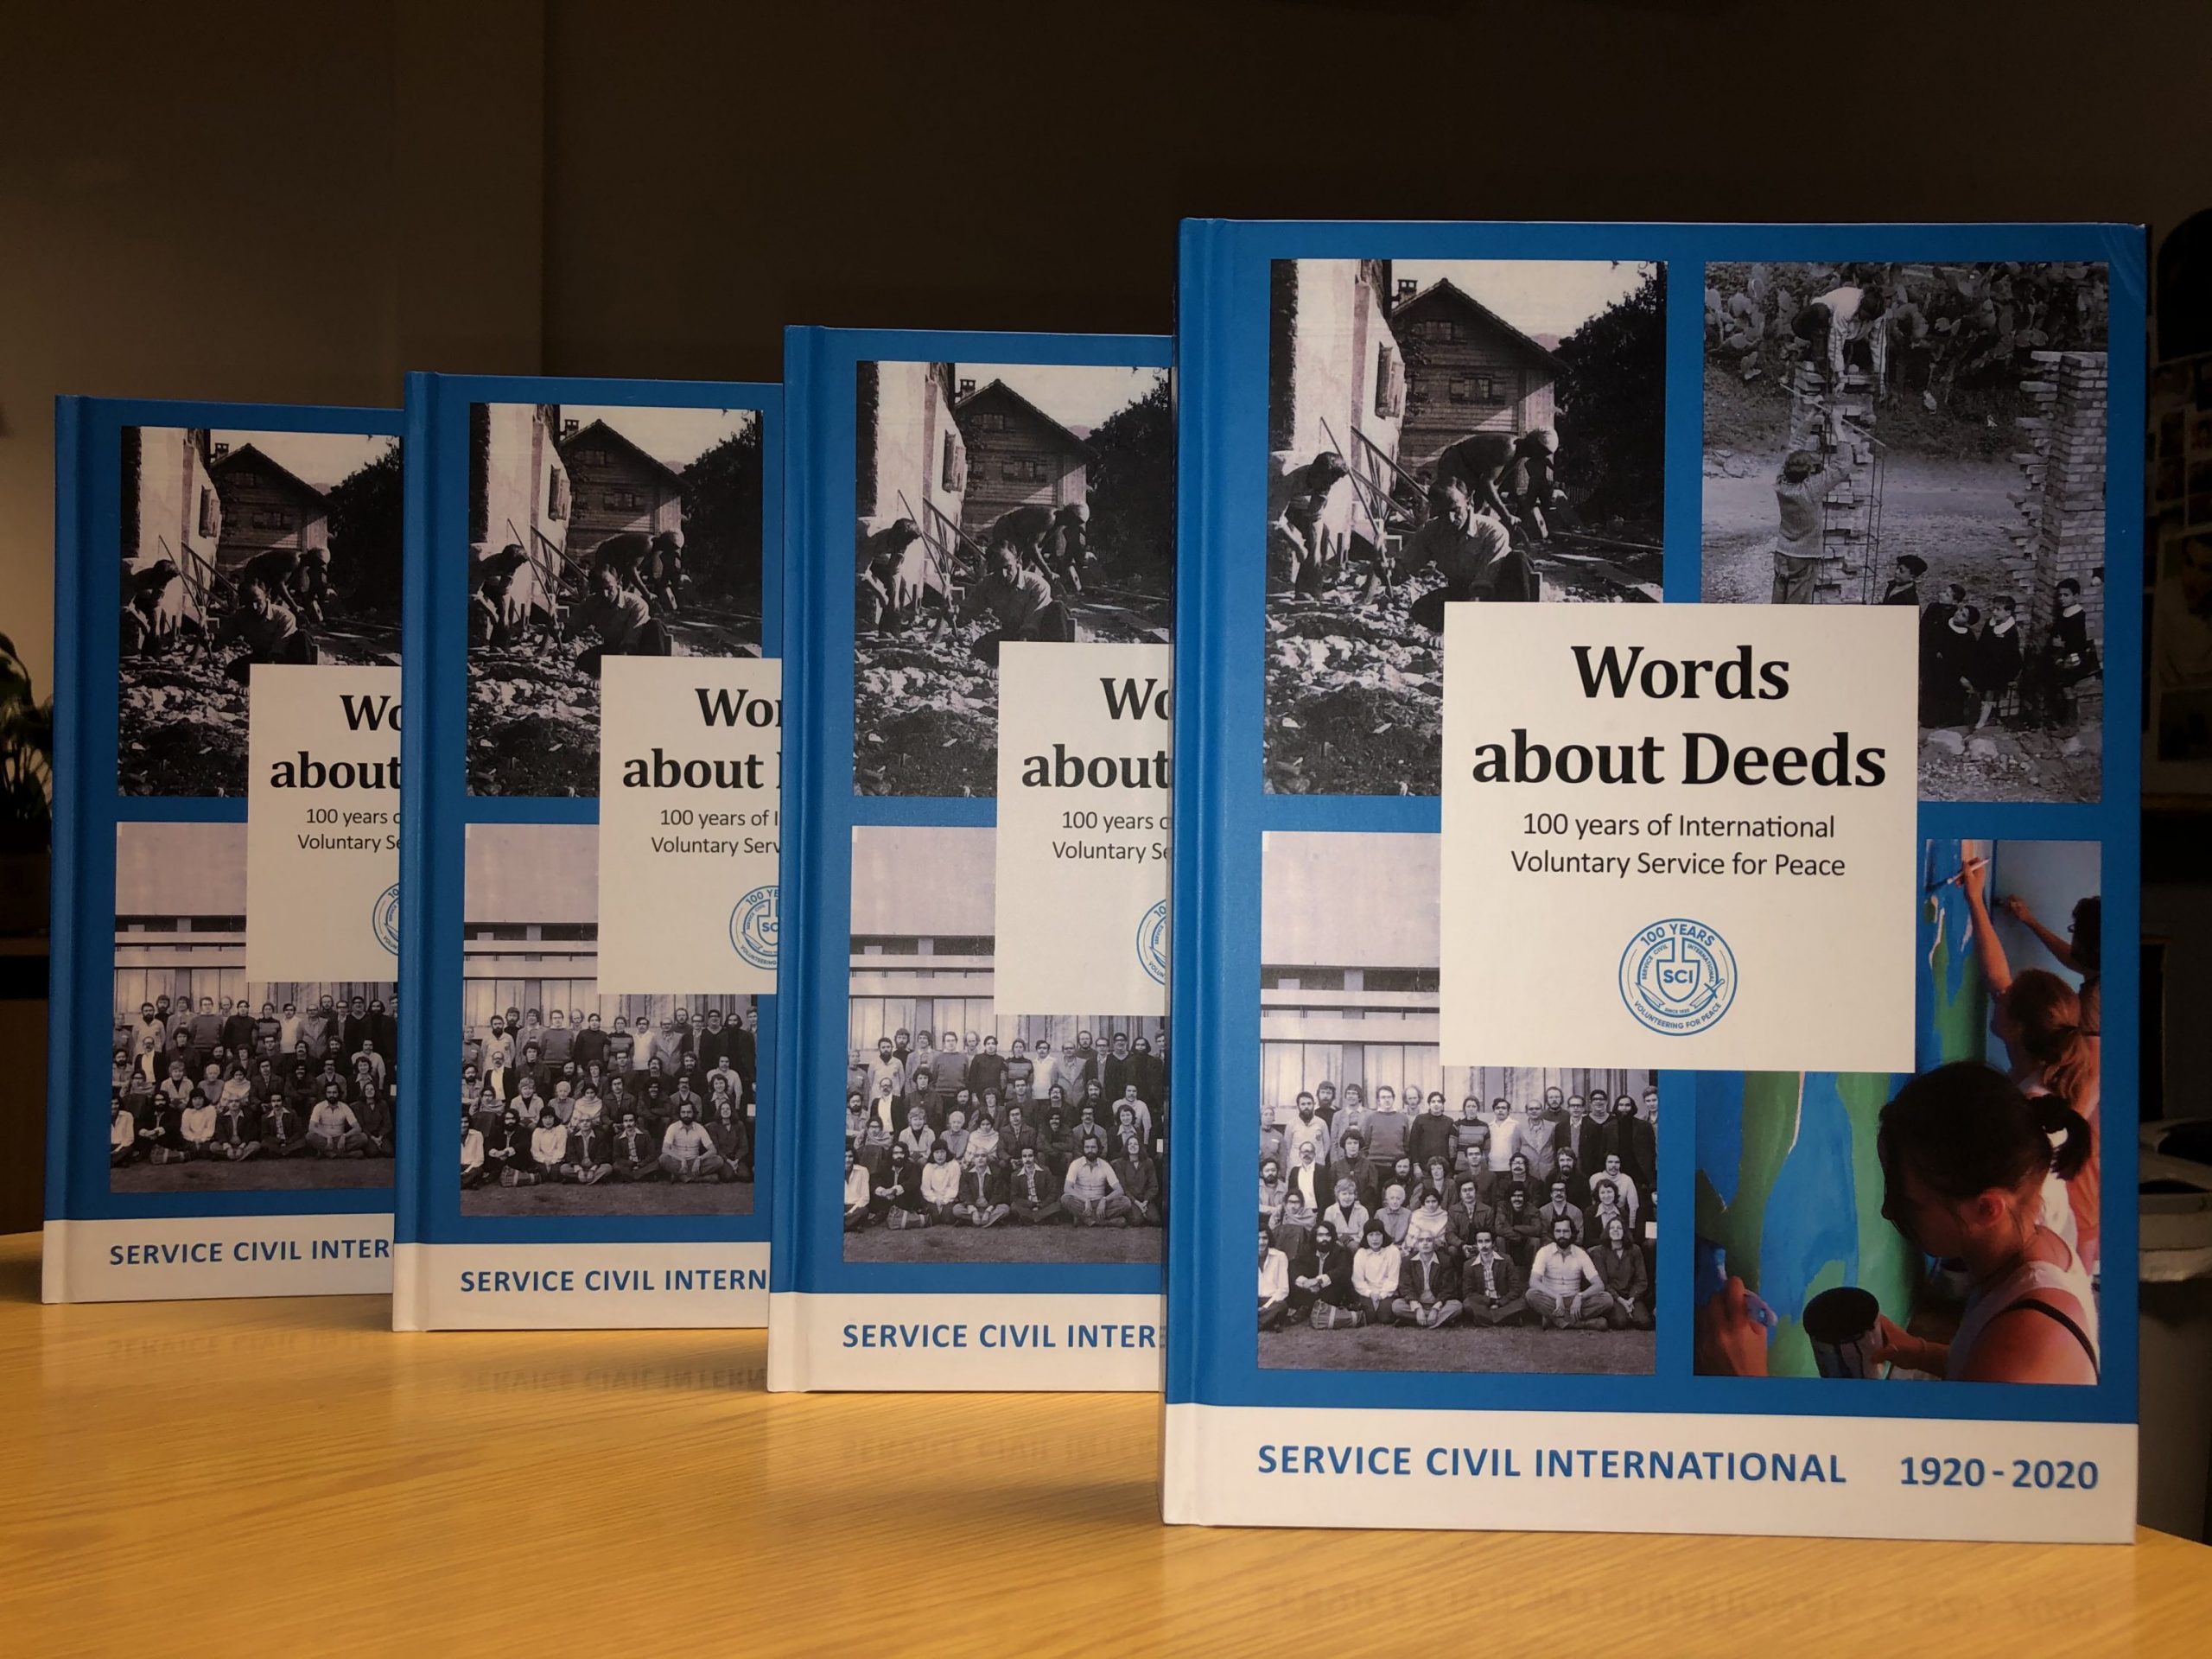 Il libro “Words about Deeds” ripercorre la lunga storia del servizio civile internazionale per la pace. Diversi articoli evidenziano le fasi e gli sviluppi del SCI con l’aiuto di storie e ritratti di attivisti durante i 100 anni del SCI.